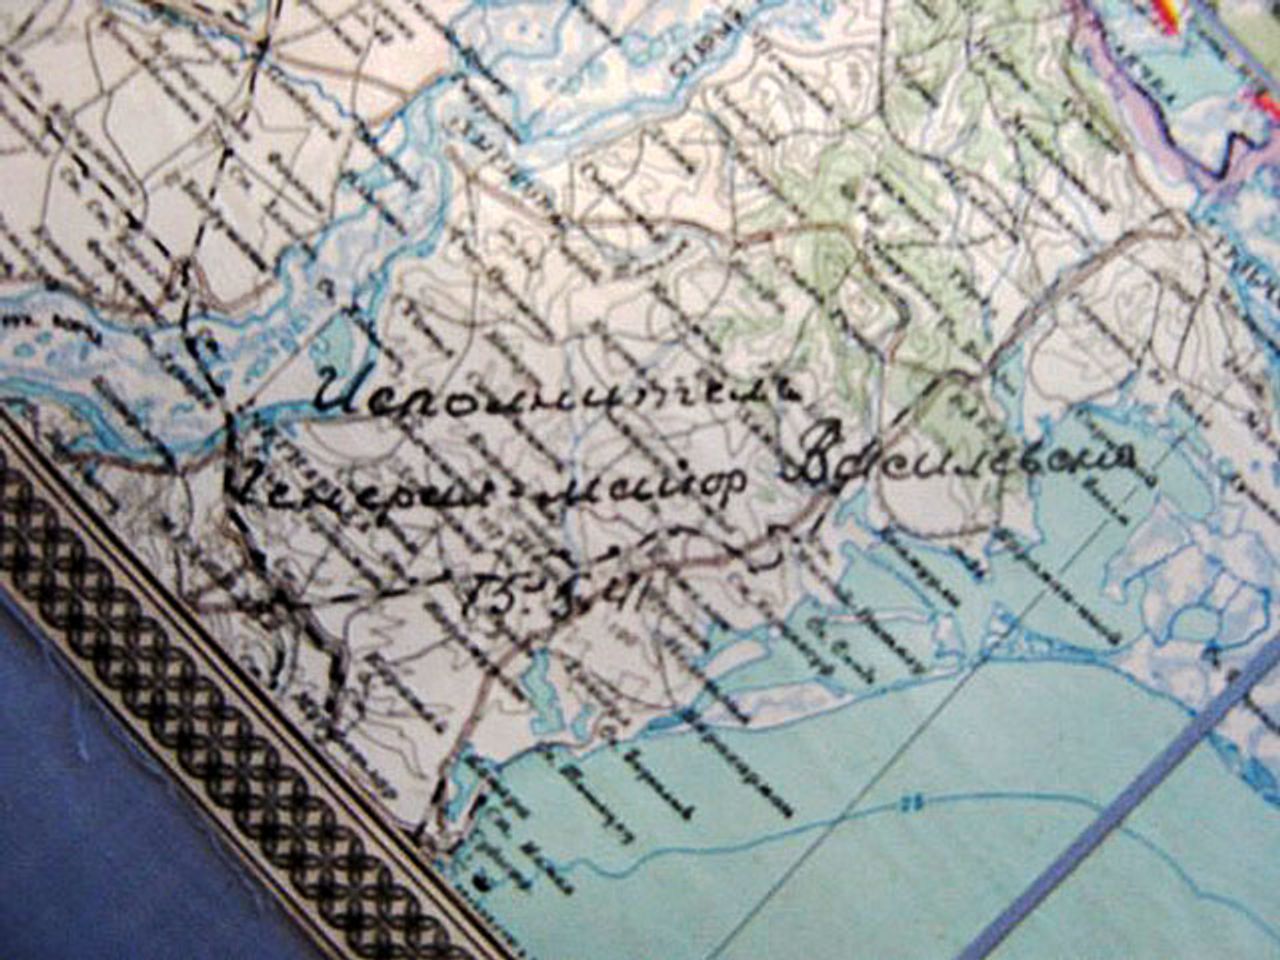 На карте, прилагаемой к плану превентивного удара, видна подпись ее автора: «Исполнитель генерал-майор Василевский. 15.5.41».  